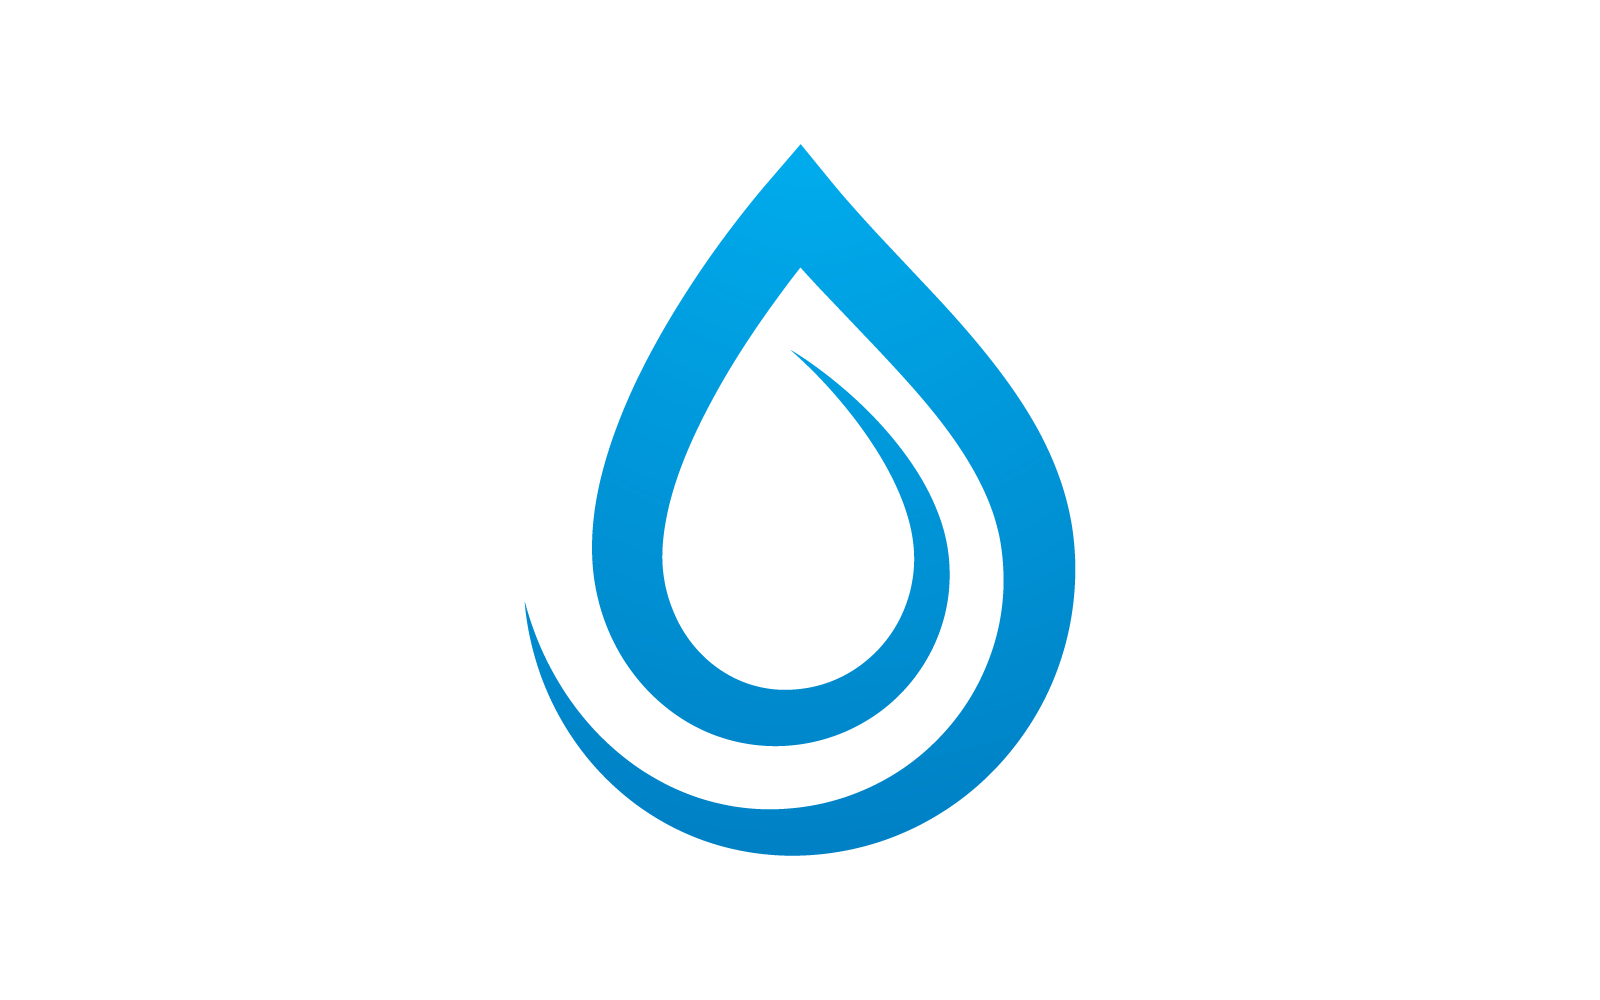 Kropla wody ilustracja logo ikona Płaska konstrukcja wektor